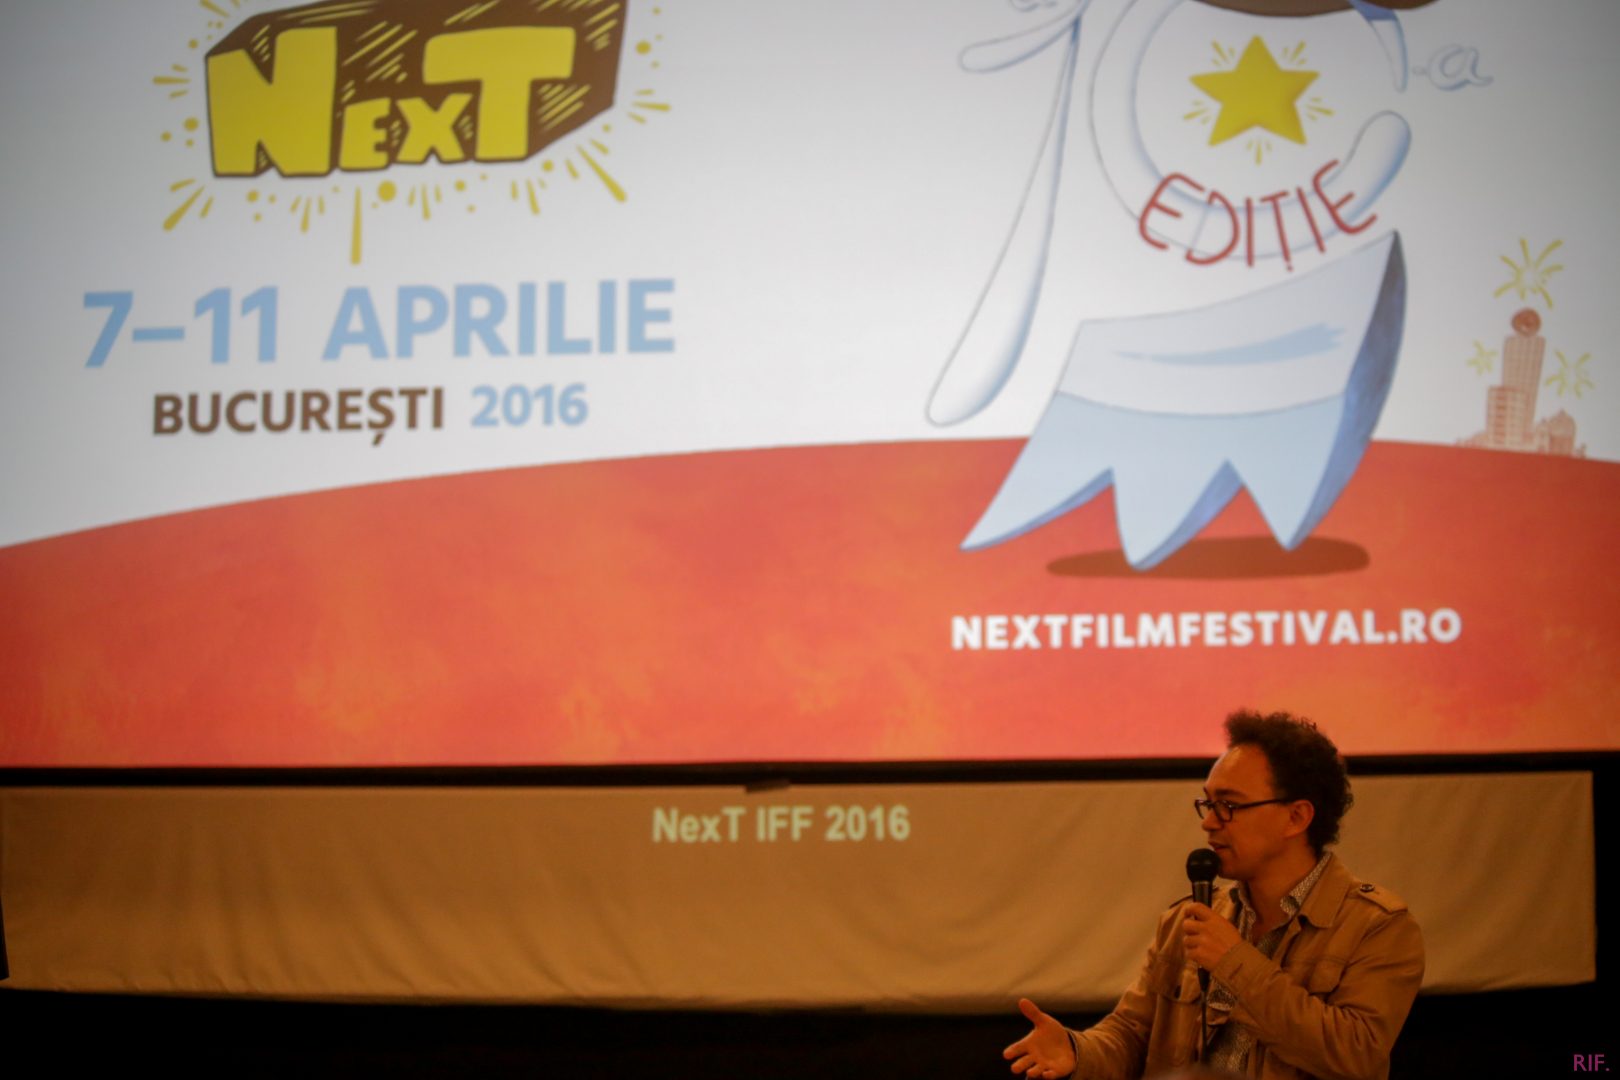 NexT IFF 2016